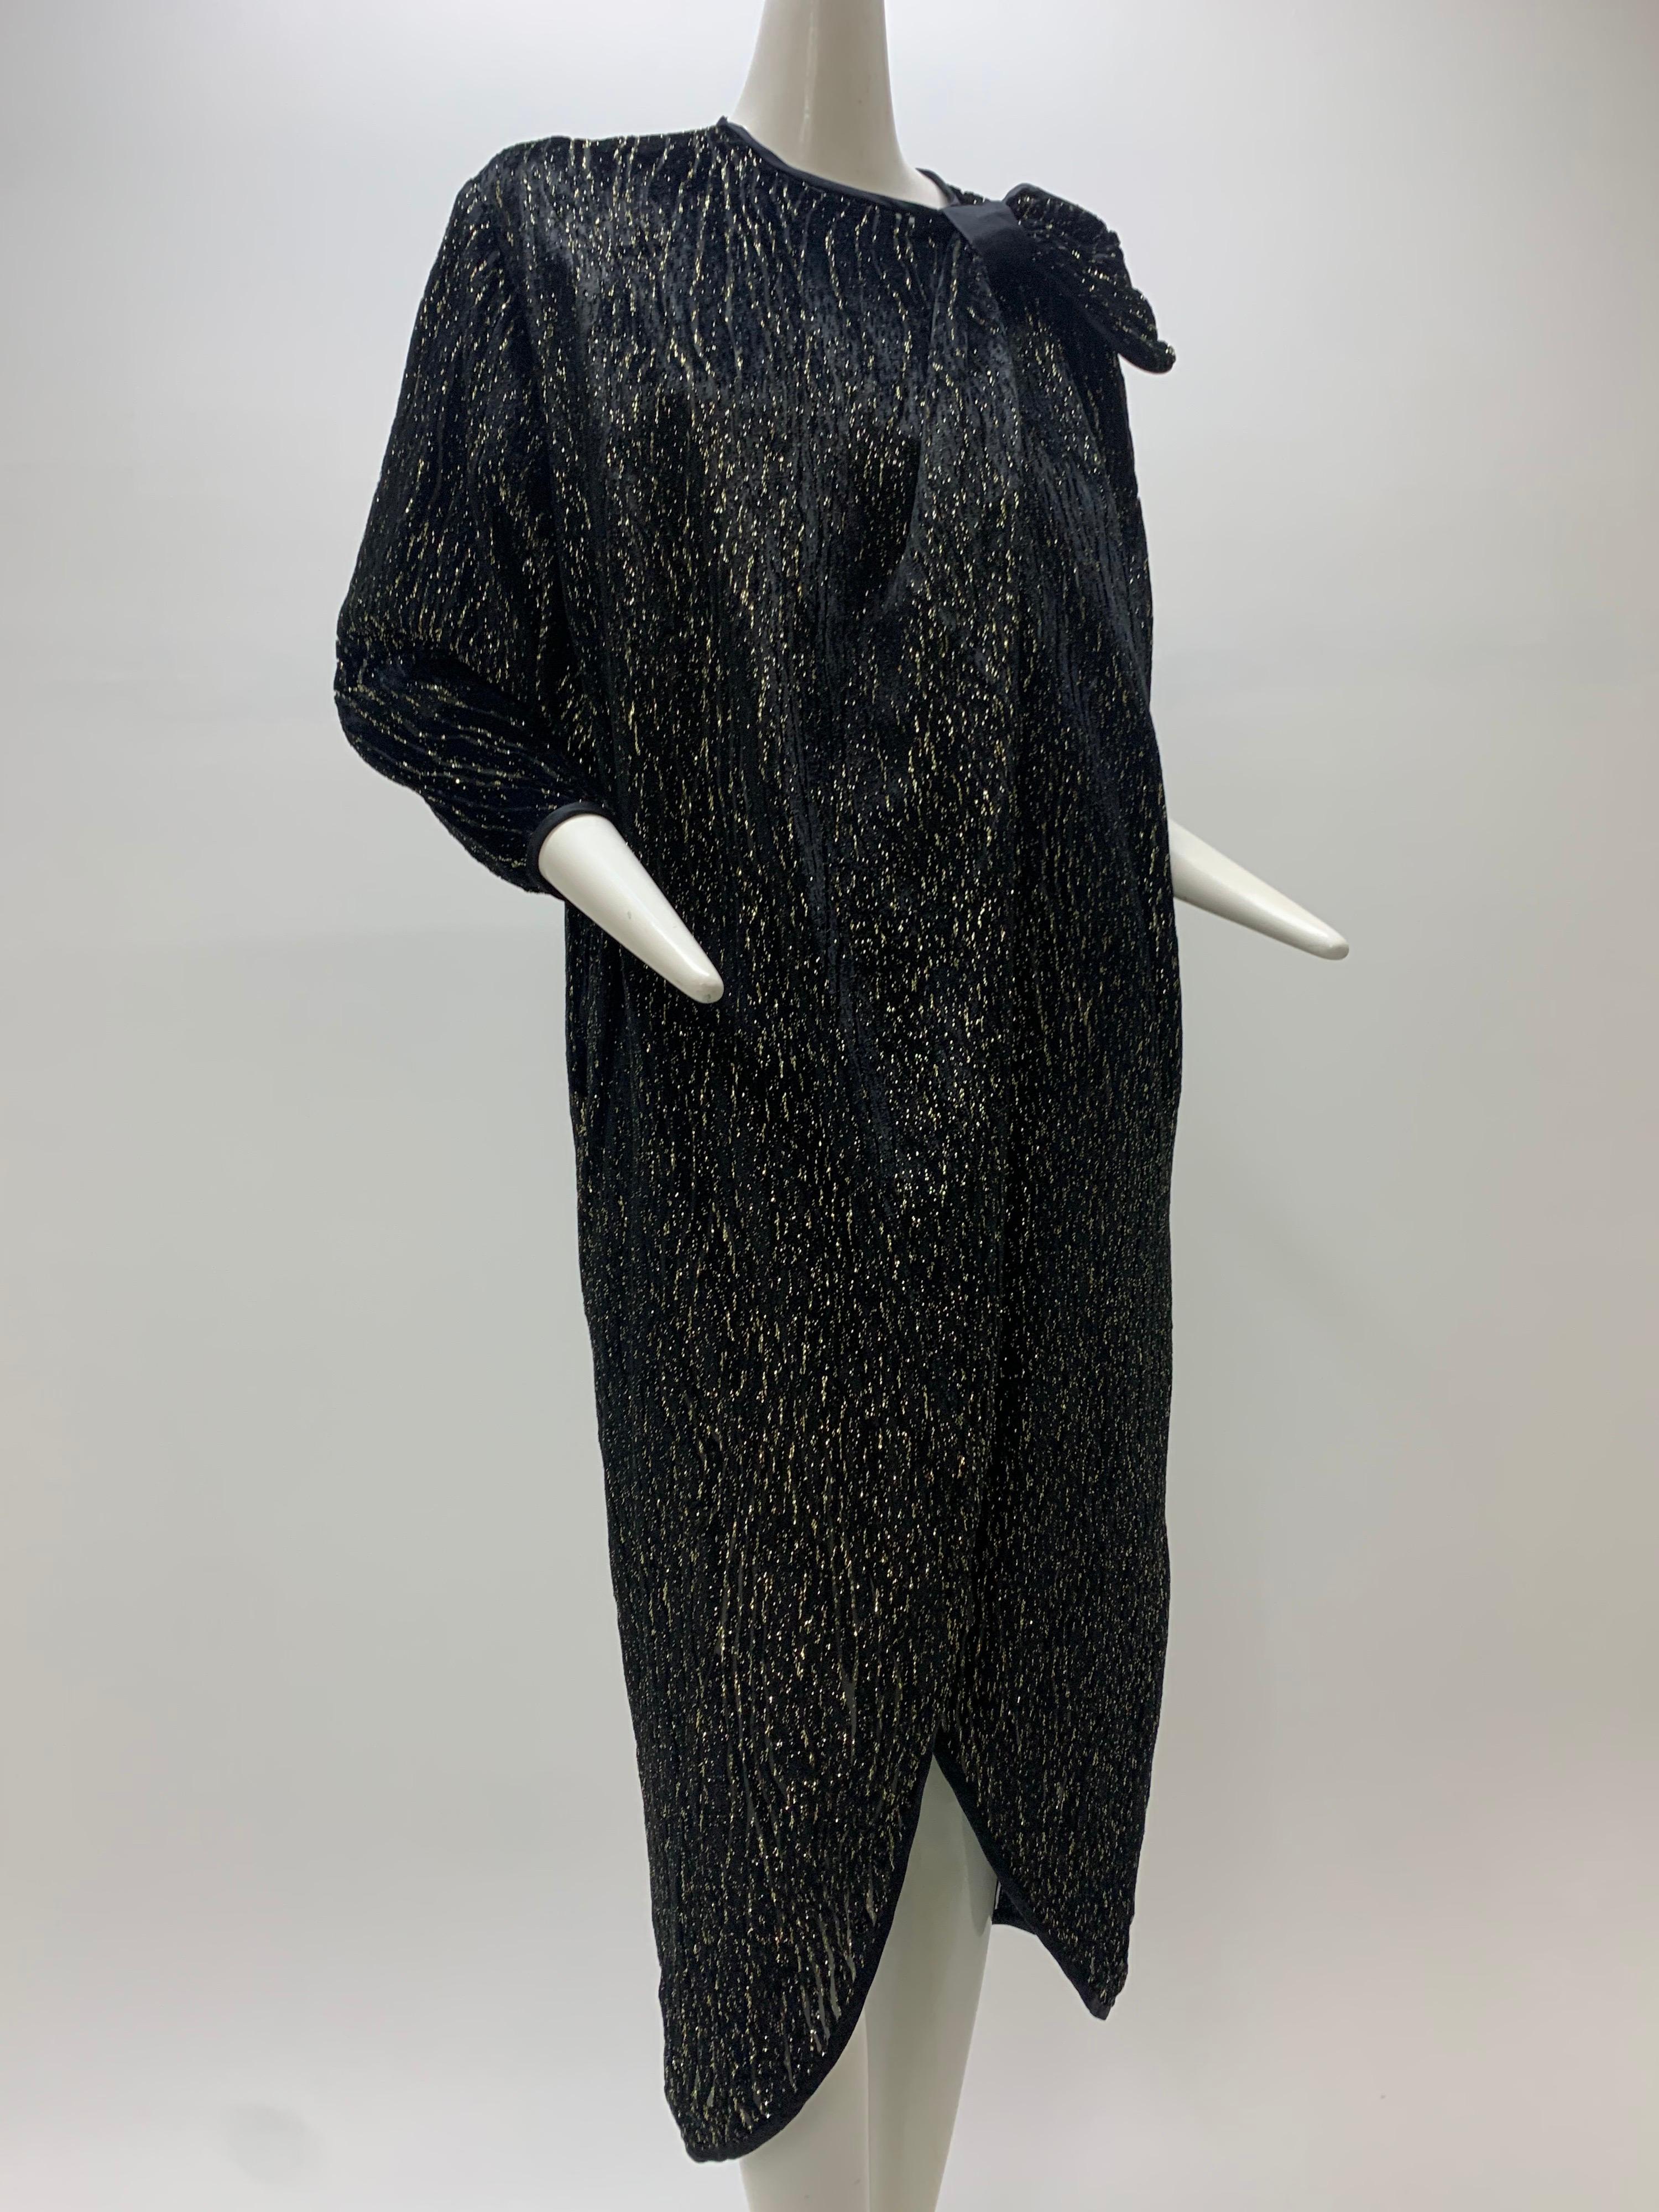 1980 Schiaparelli Black & Gold Woodgrain Velvet Side Tie Opera Coat or Dress For Sale 7